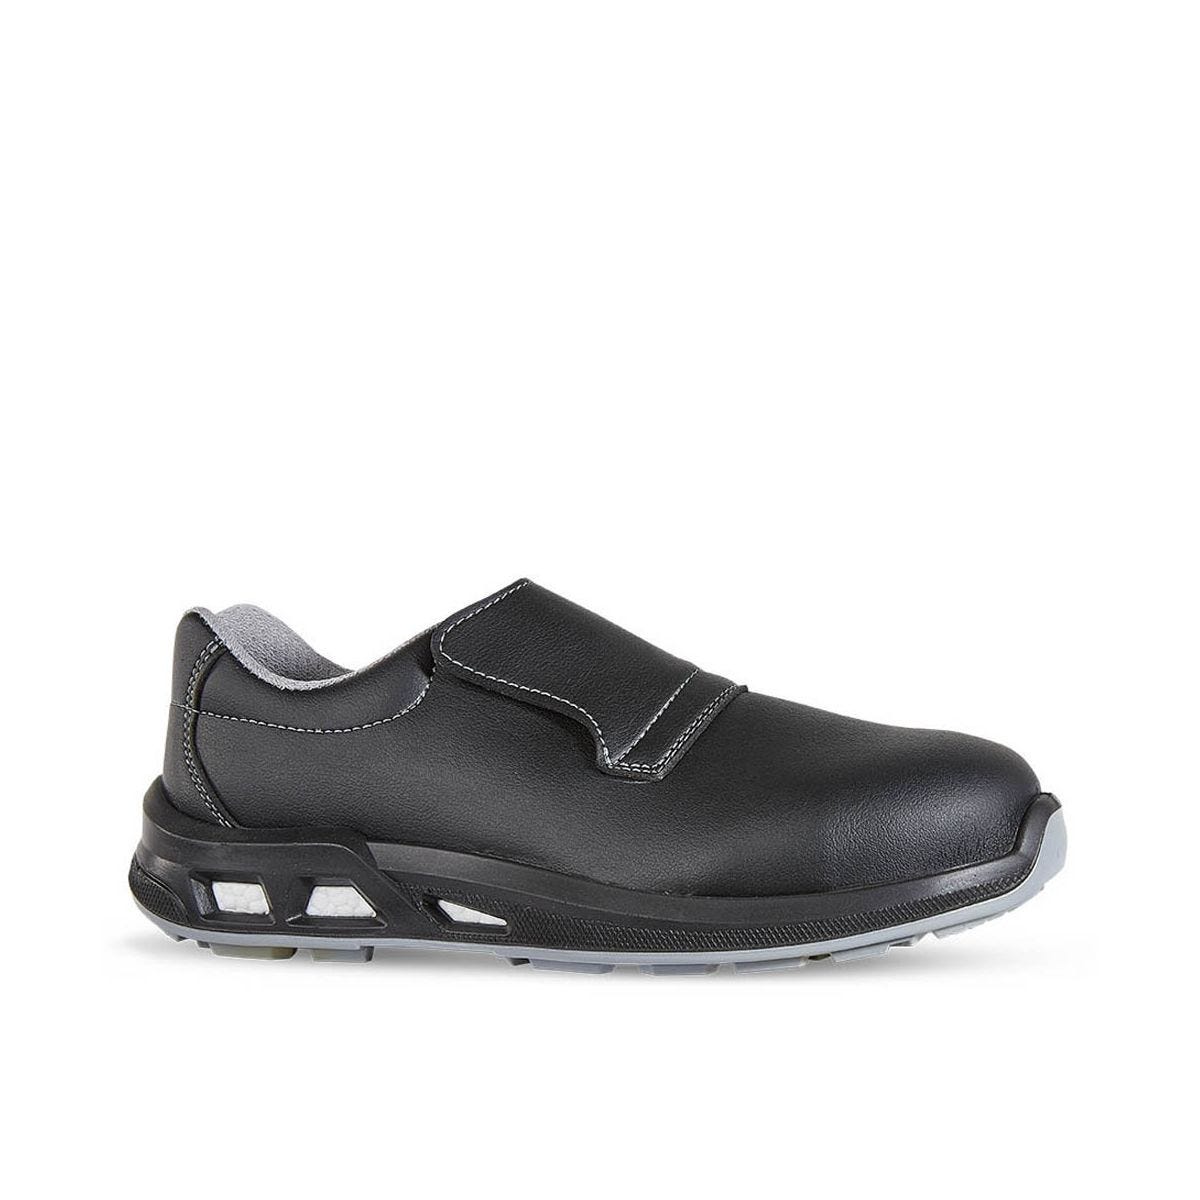 Chaussures de sécurité basses JALCARBO S3 - JALLATTE - Taille 46 0